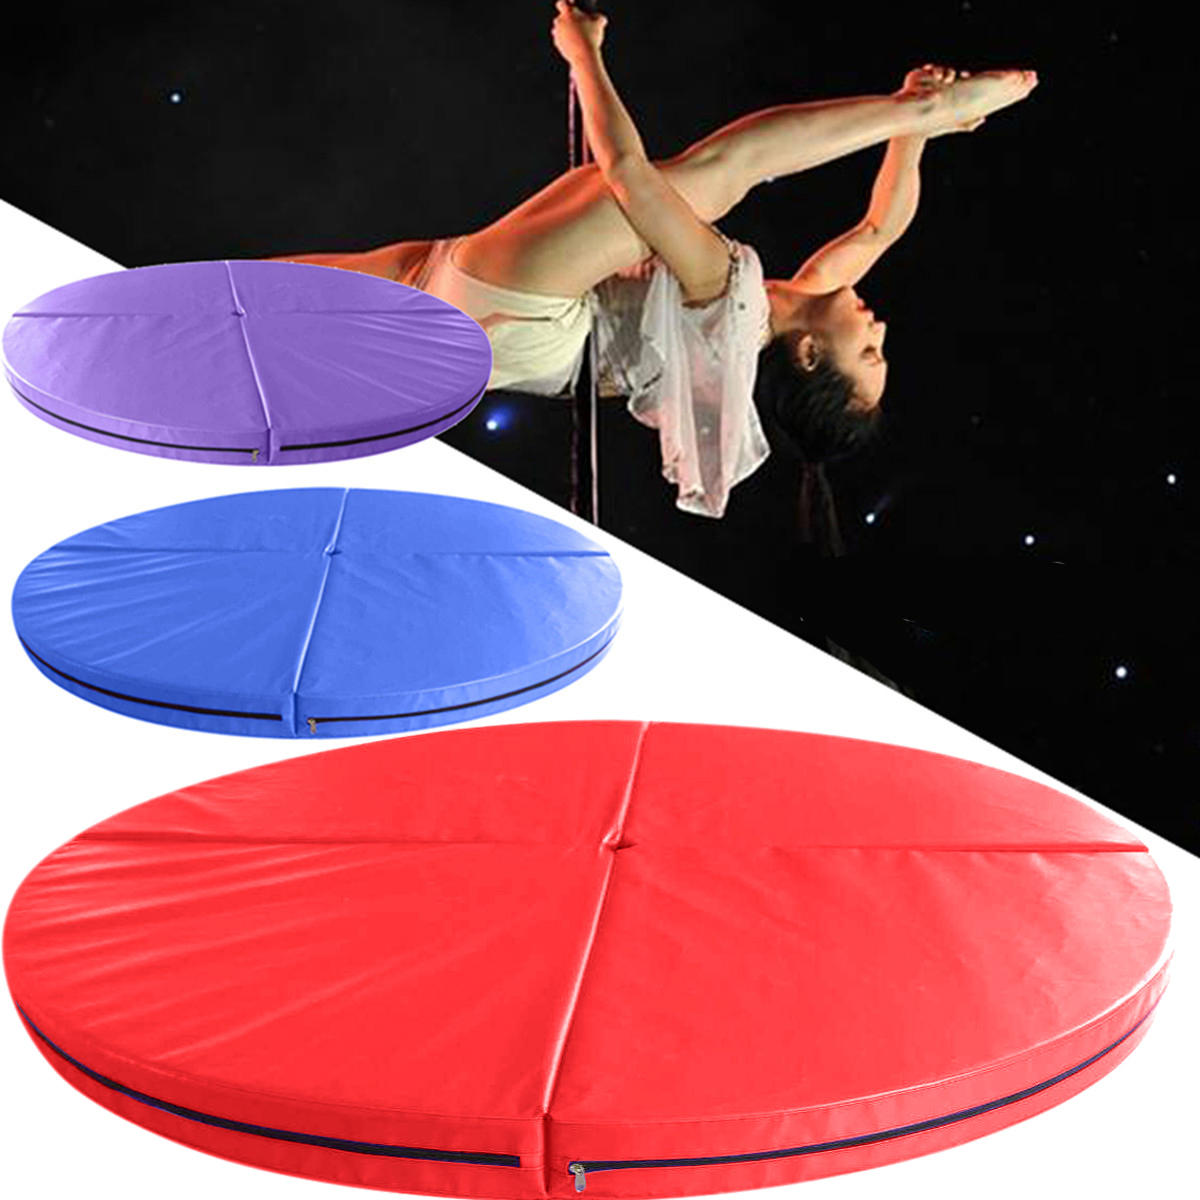 ürkçe: 47x3,9 inç 4 katlanabilir direk dansı güvenlik matı Jimnastik Fitness Yoga Zemin Ped.